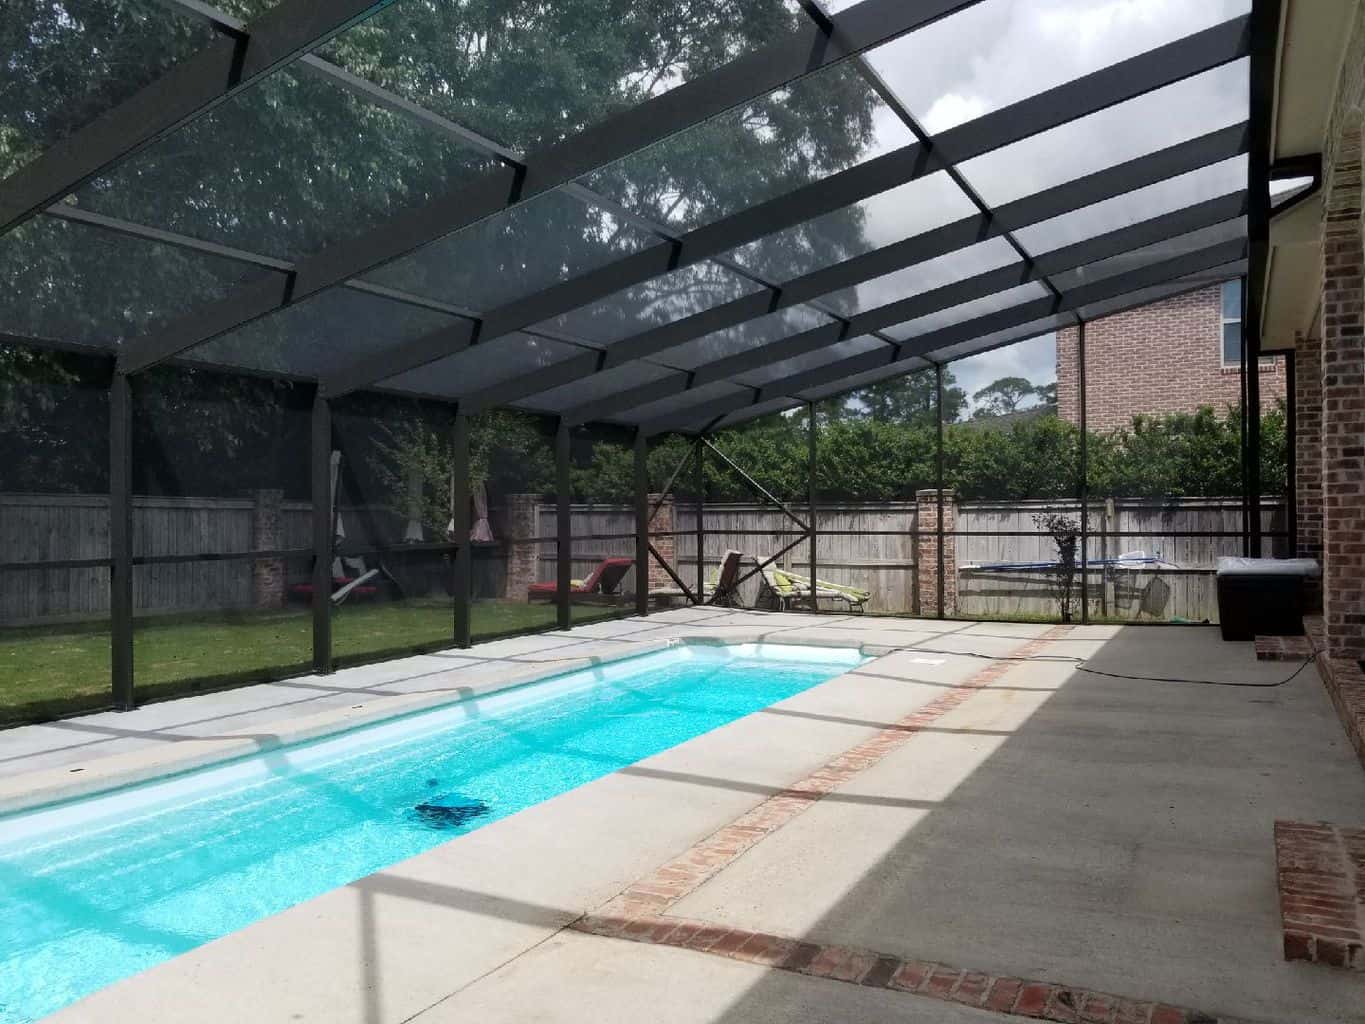 Pool Enclosure builder Mobile, AL